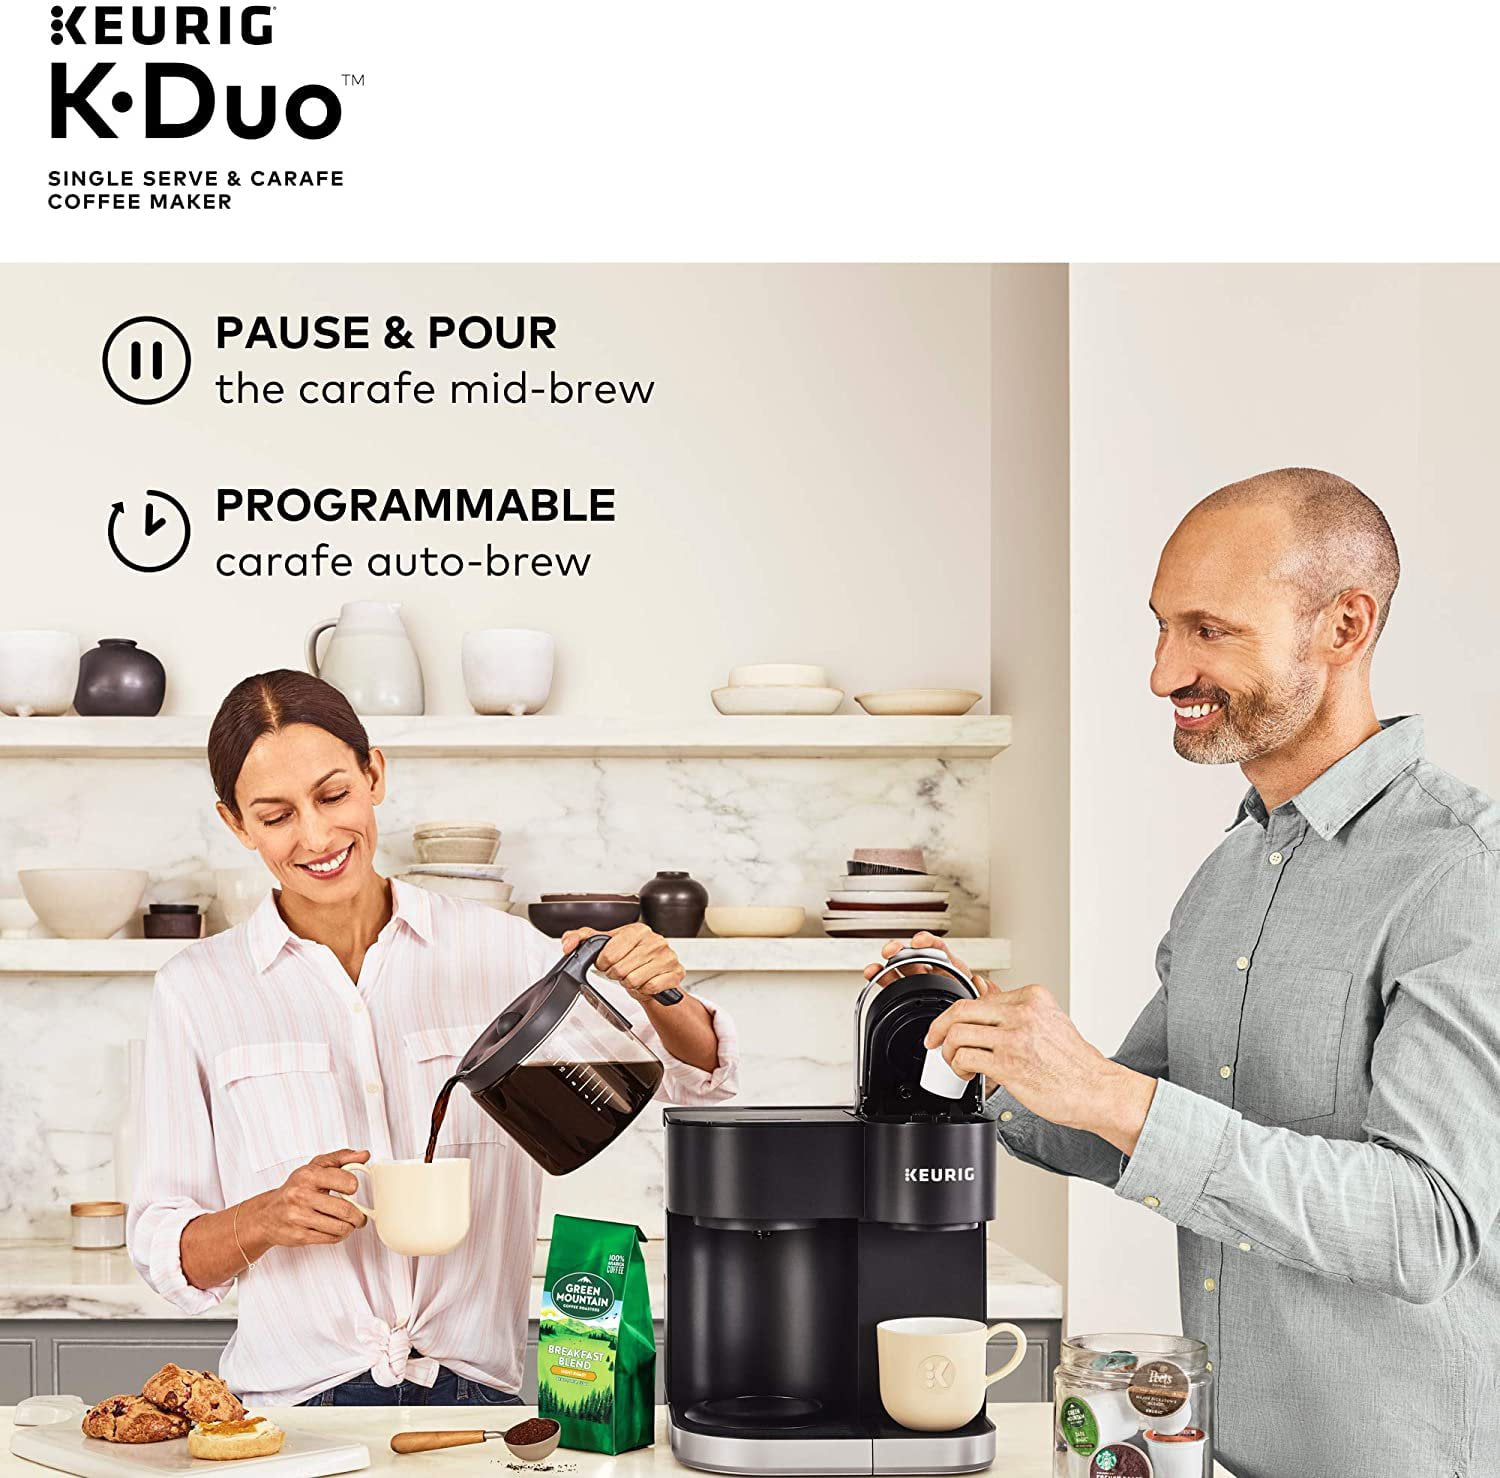 Keurig K-Duo 12-Cup Coffee Maker and Single Serve K-Cup Brewer Black  5000204977 - Best Buy